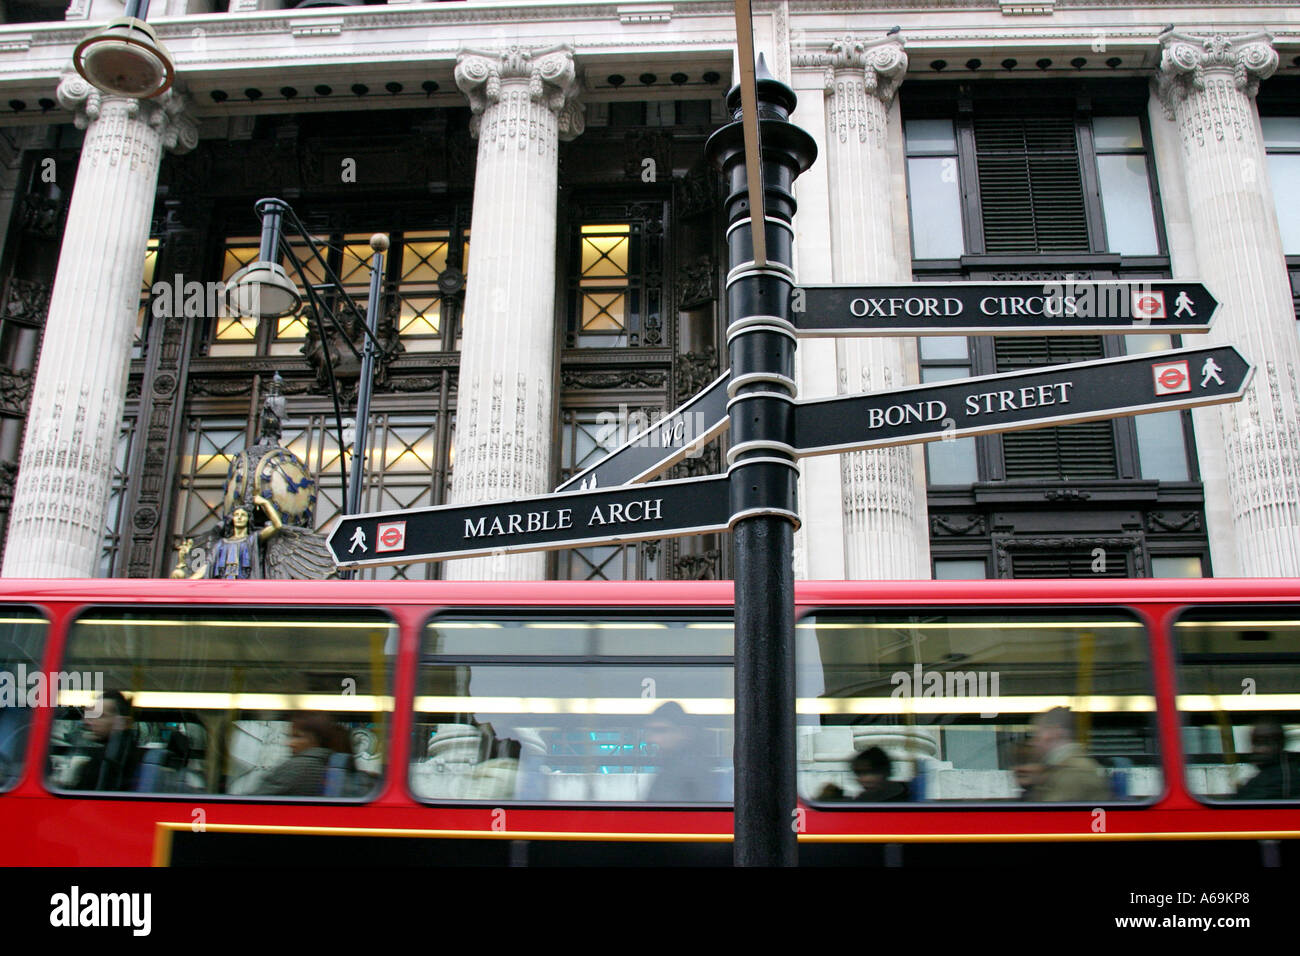 Autobus à deux étages sur Oxford Street London UK Banque D'Images